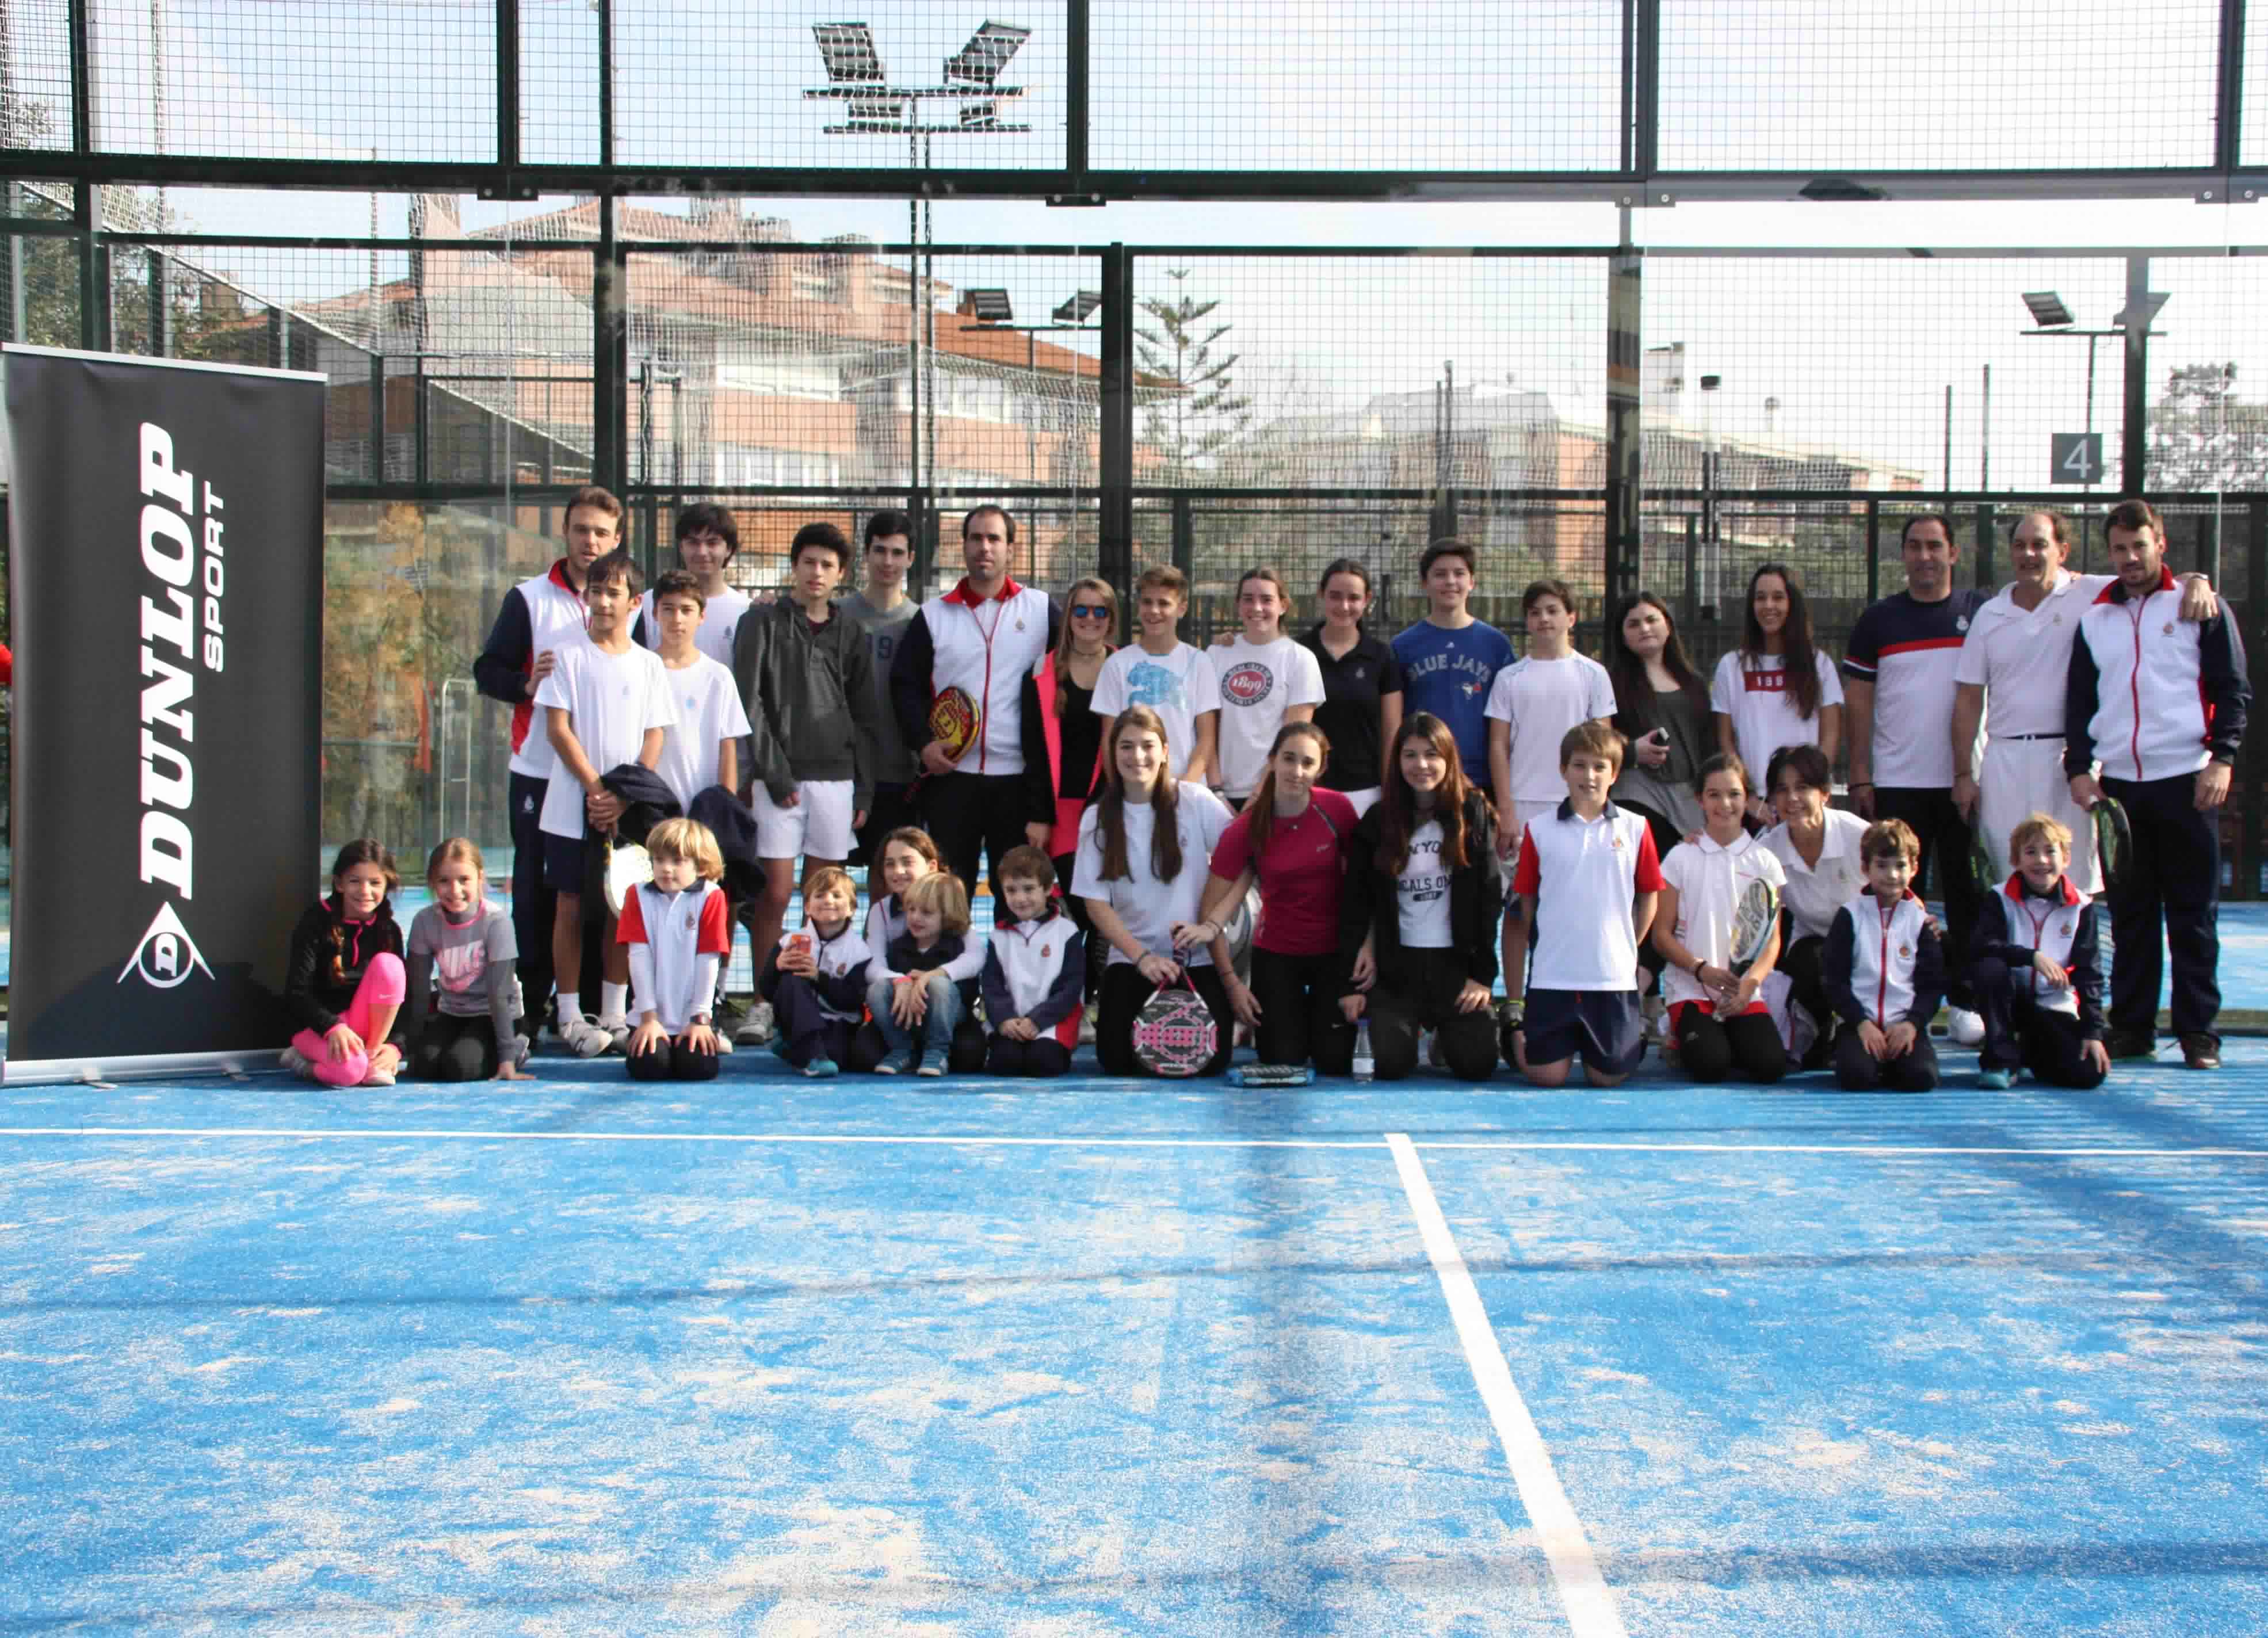 Queda inaugurada la nueva zona de pádel! | Reial Club de Tennis Barcelona